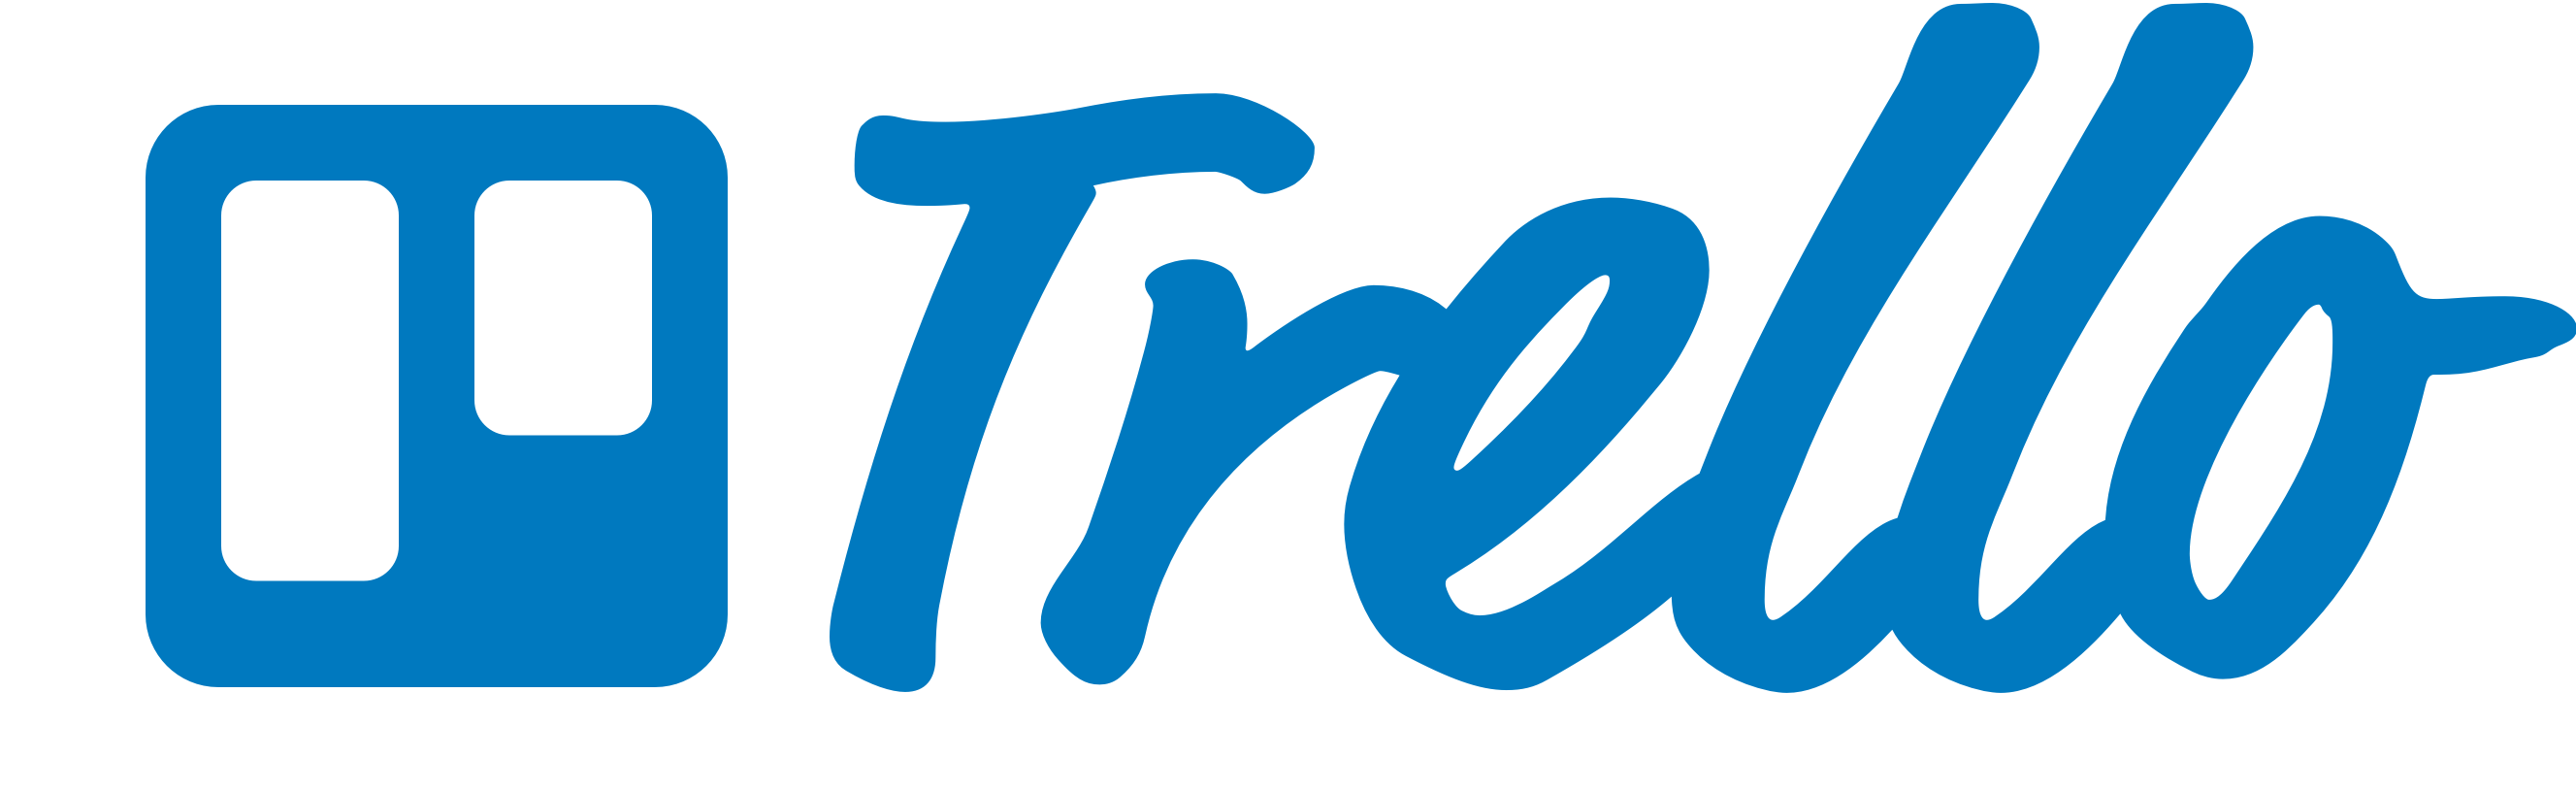 trello-logo-blue-2